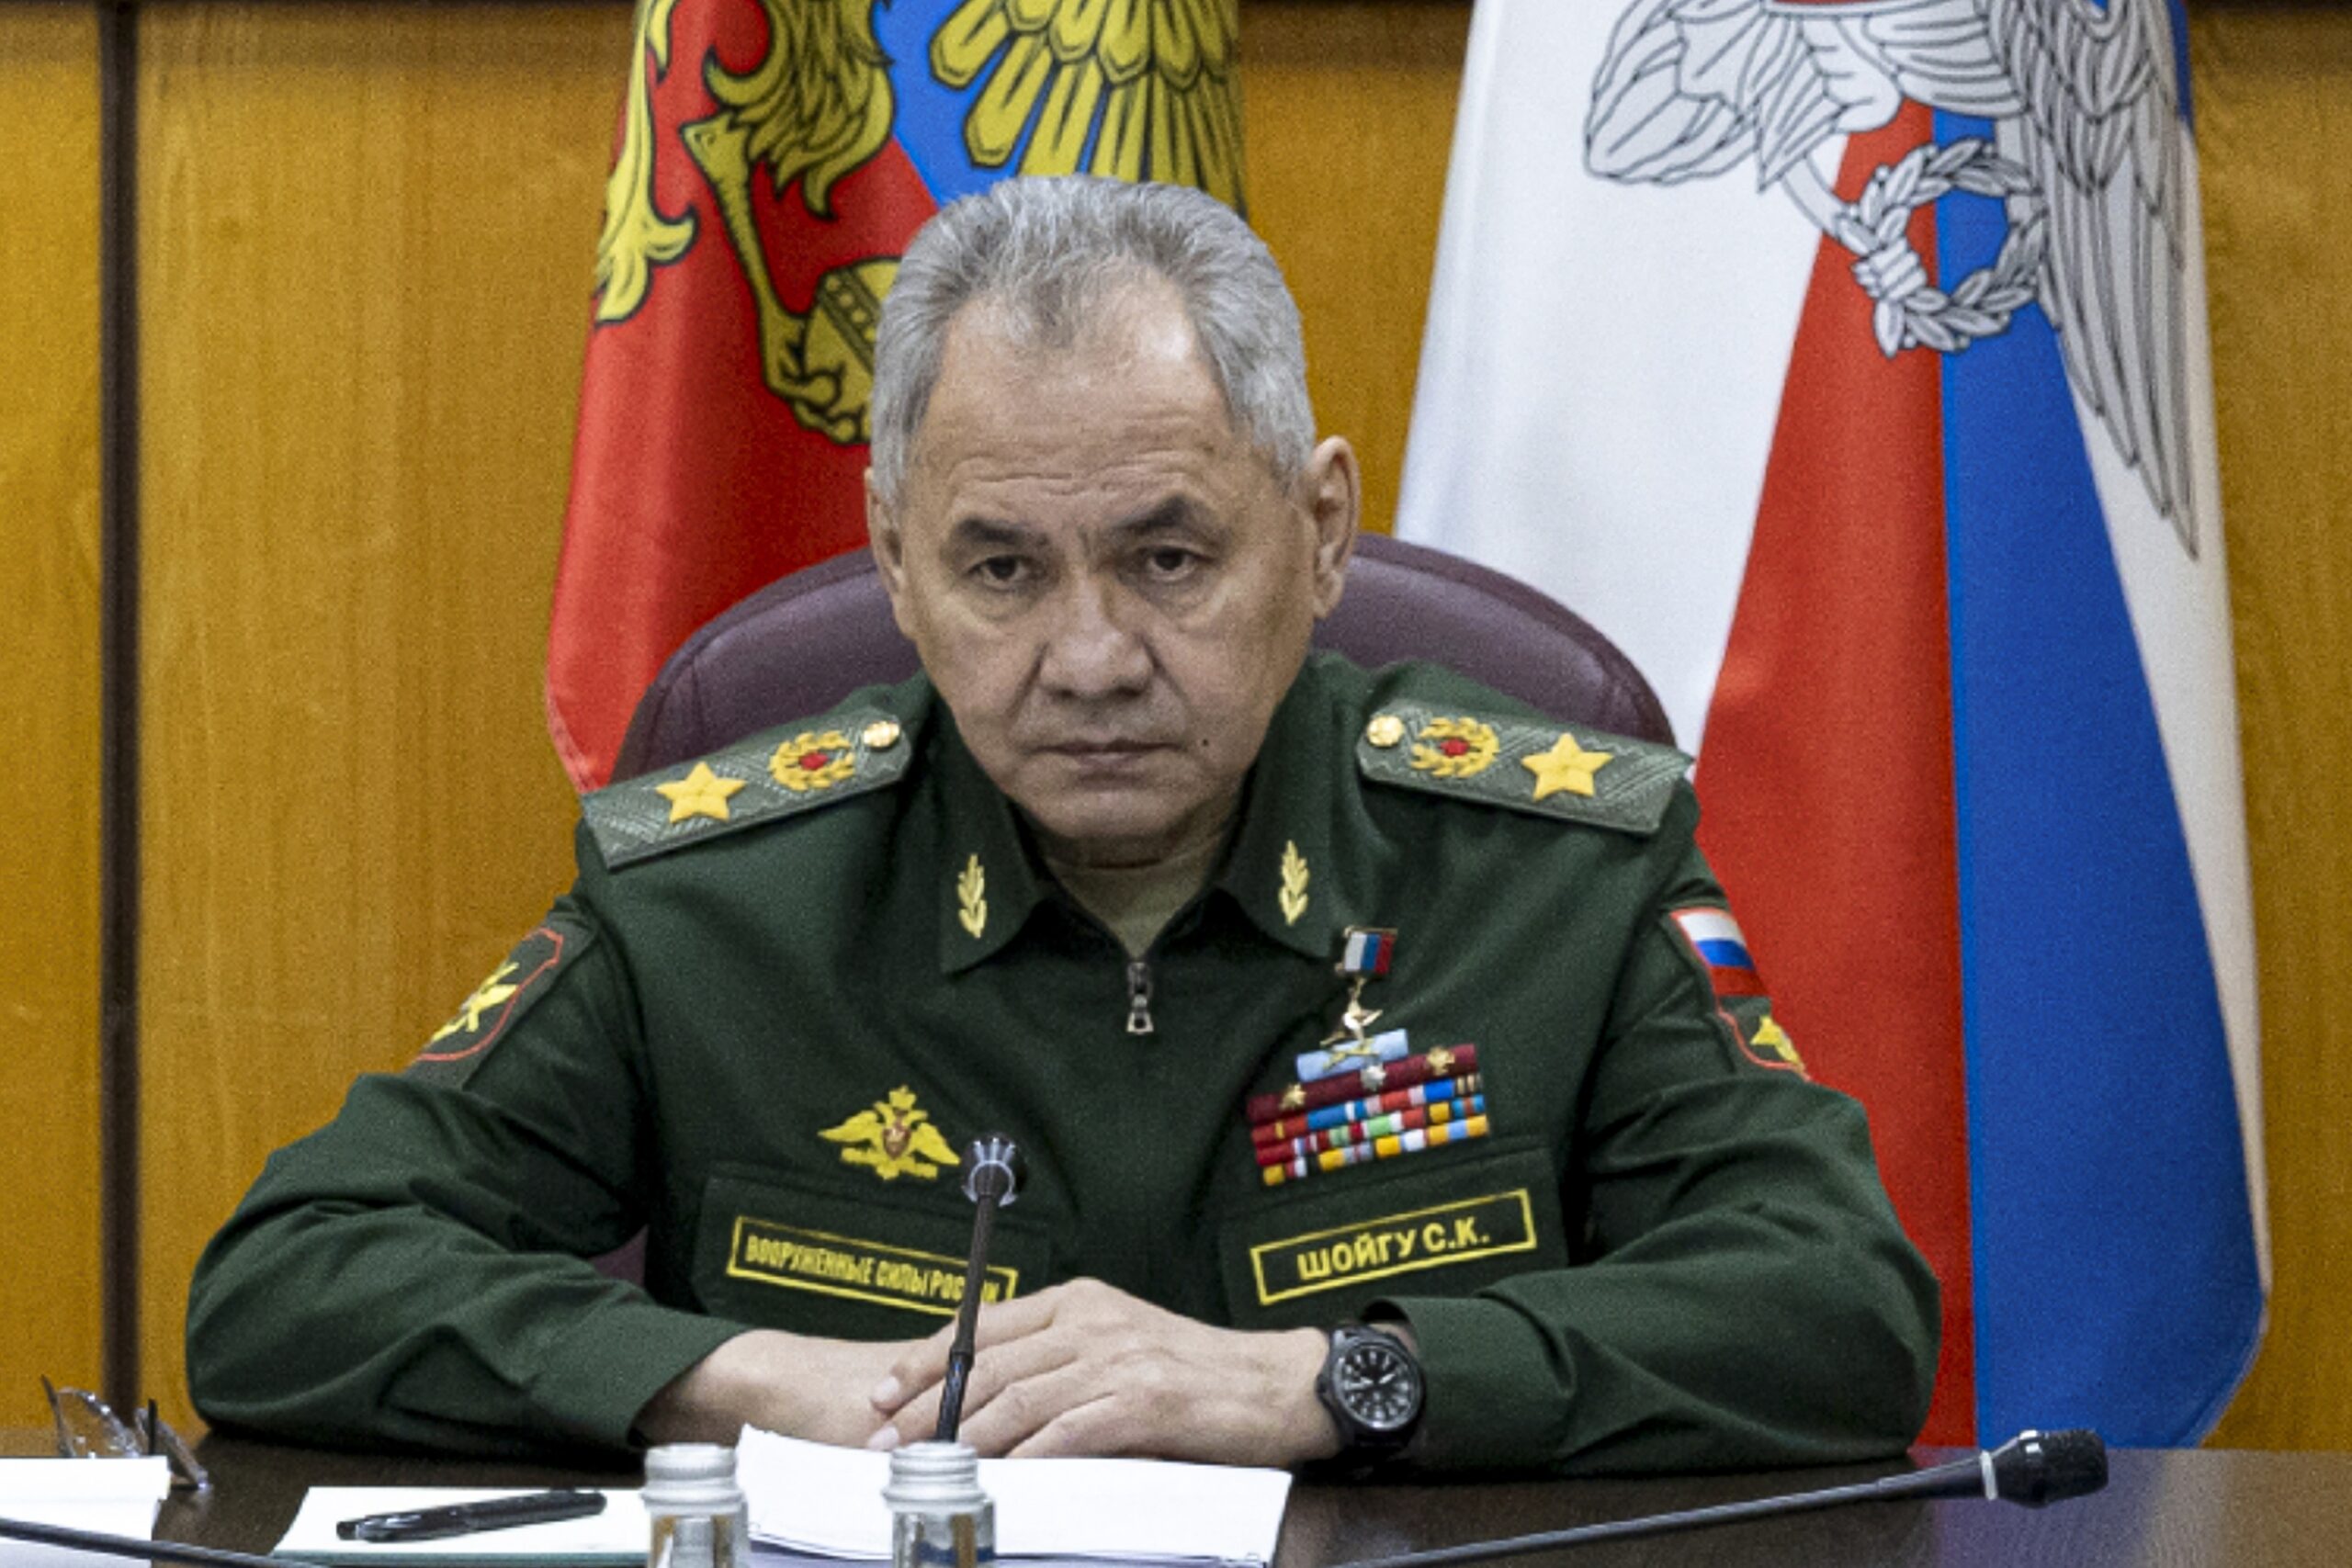 Λεκορνί και Σοϊγκού εμφανίστηκαν πρόθυμοι για διάλογο σχετικά με την Ουκρανία, σύμφωνα με το ρωσικό υπουργείο Άμυνας